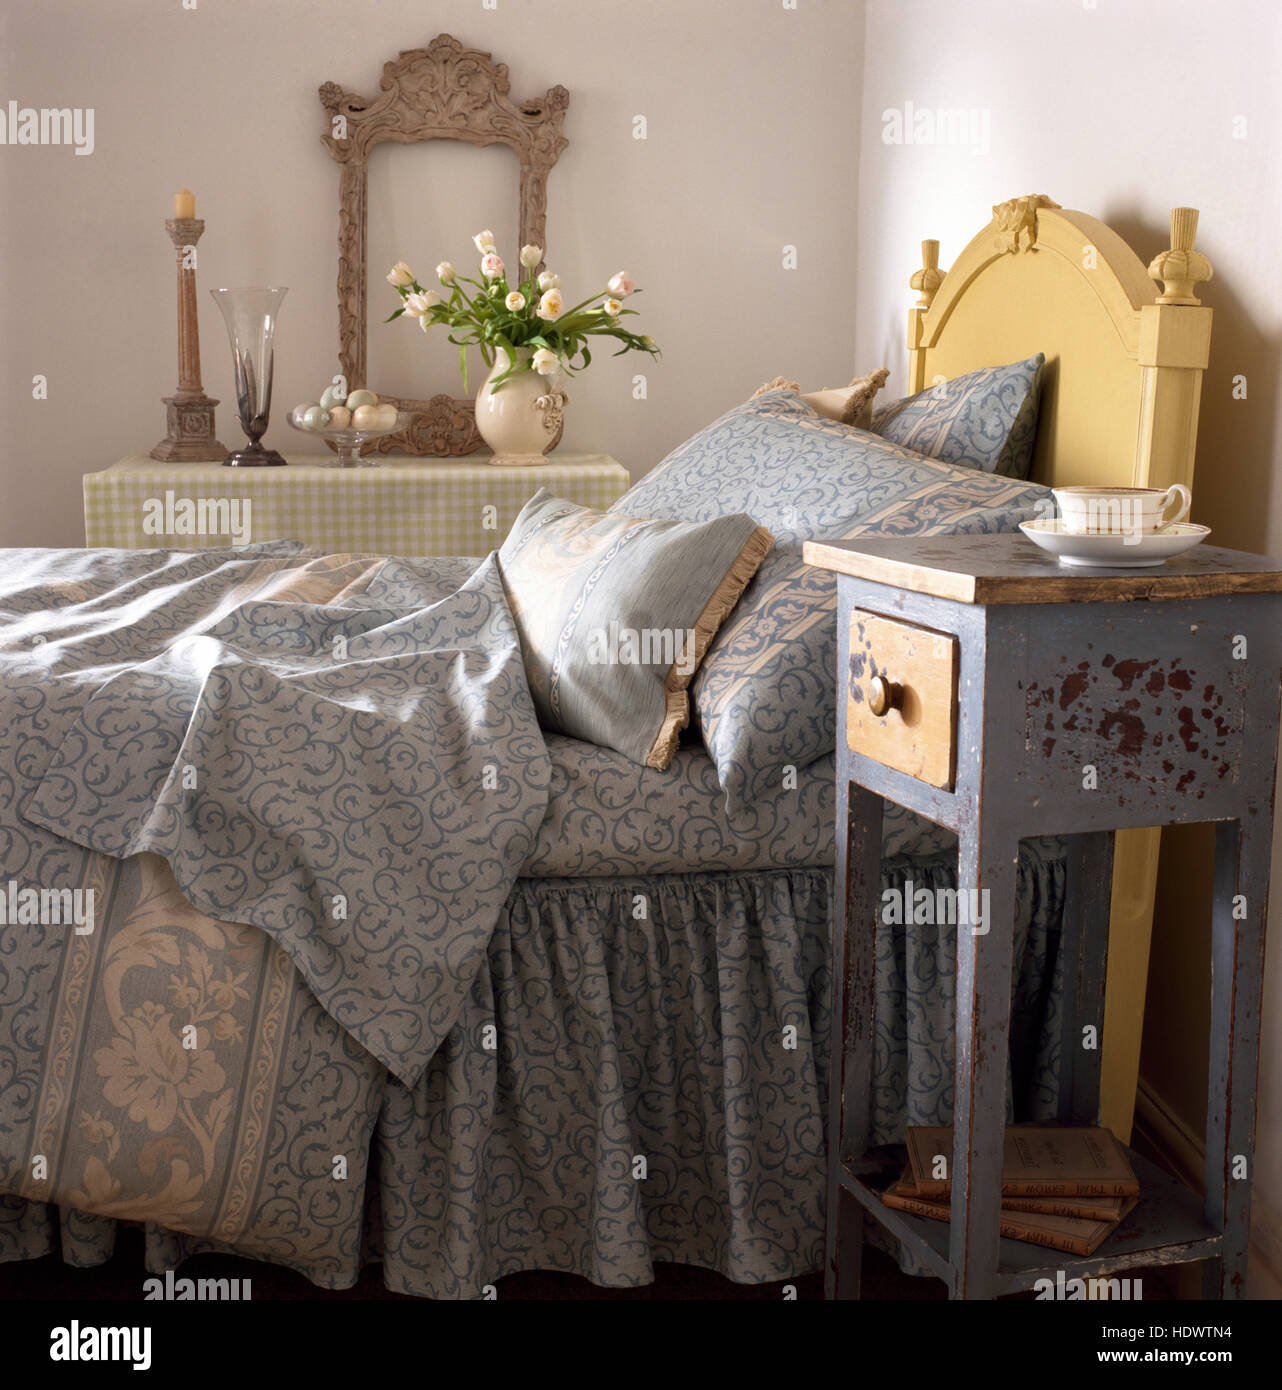 Kleine distressed gemalten Nachttisch neben dem Bett mit einer blass grau gemusterten Bettdecke und Kissen in eine Wirtschaft Stil Schlafzimmer Stockfoto